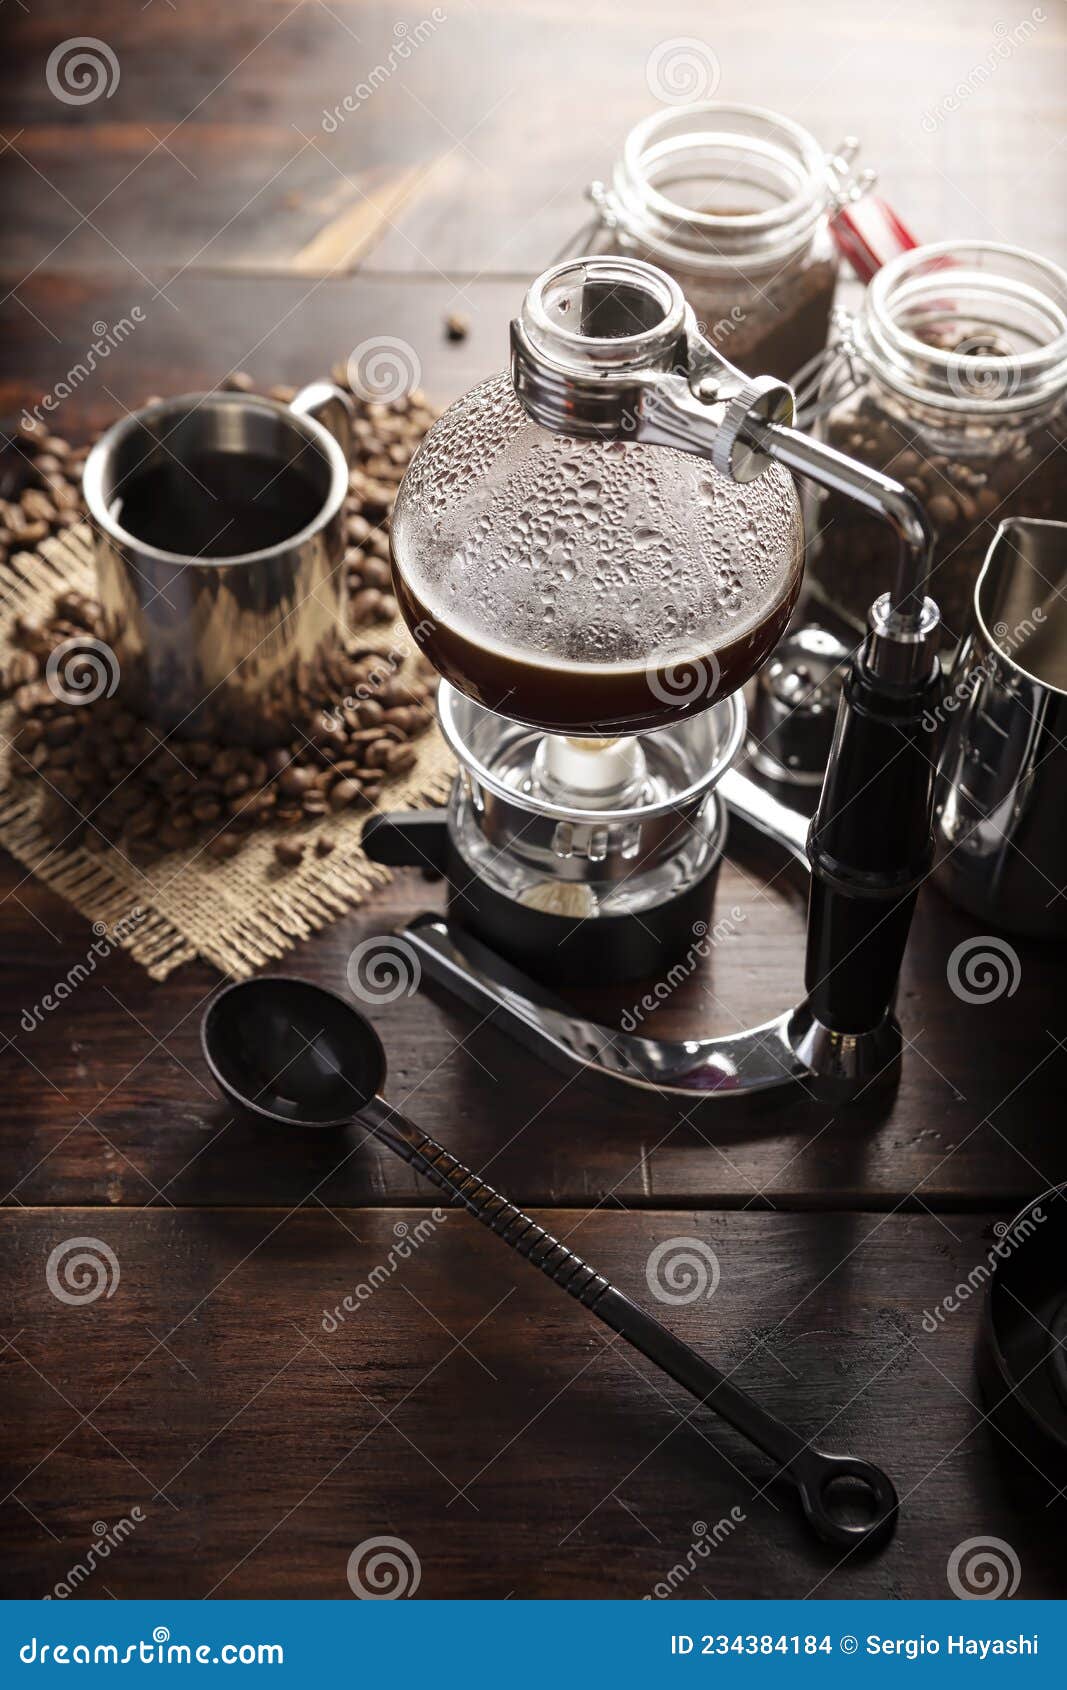 organic coffee in vac pot coffee maker